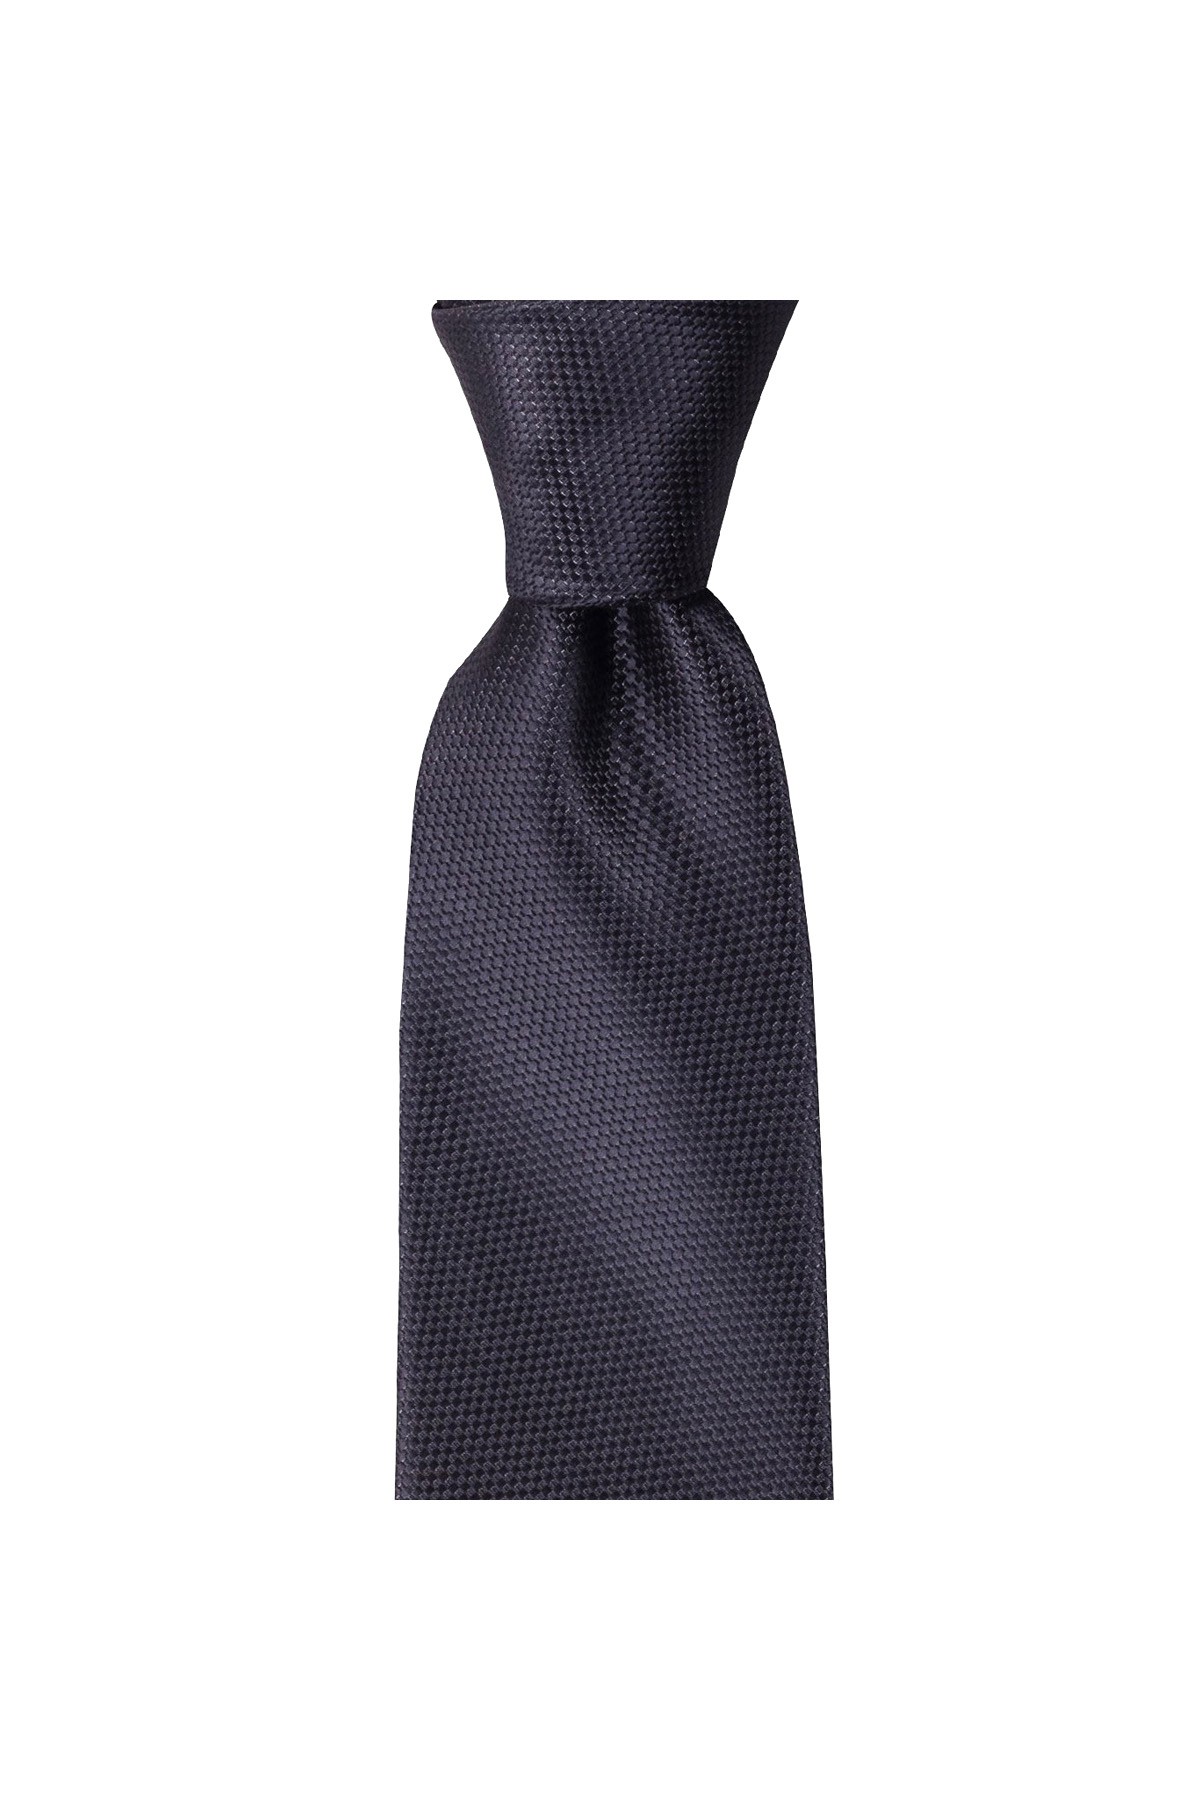 Klasik 8 cm genişliğinde mendilli kravat - Koyu gri